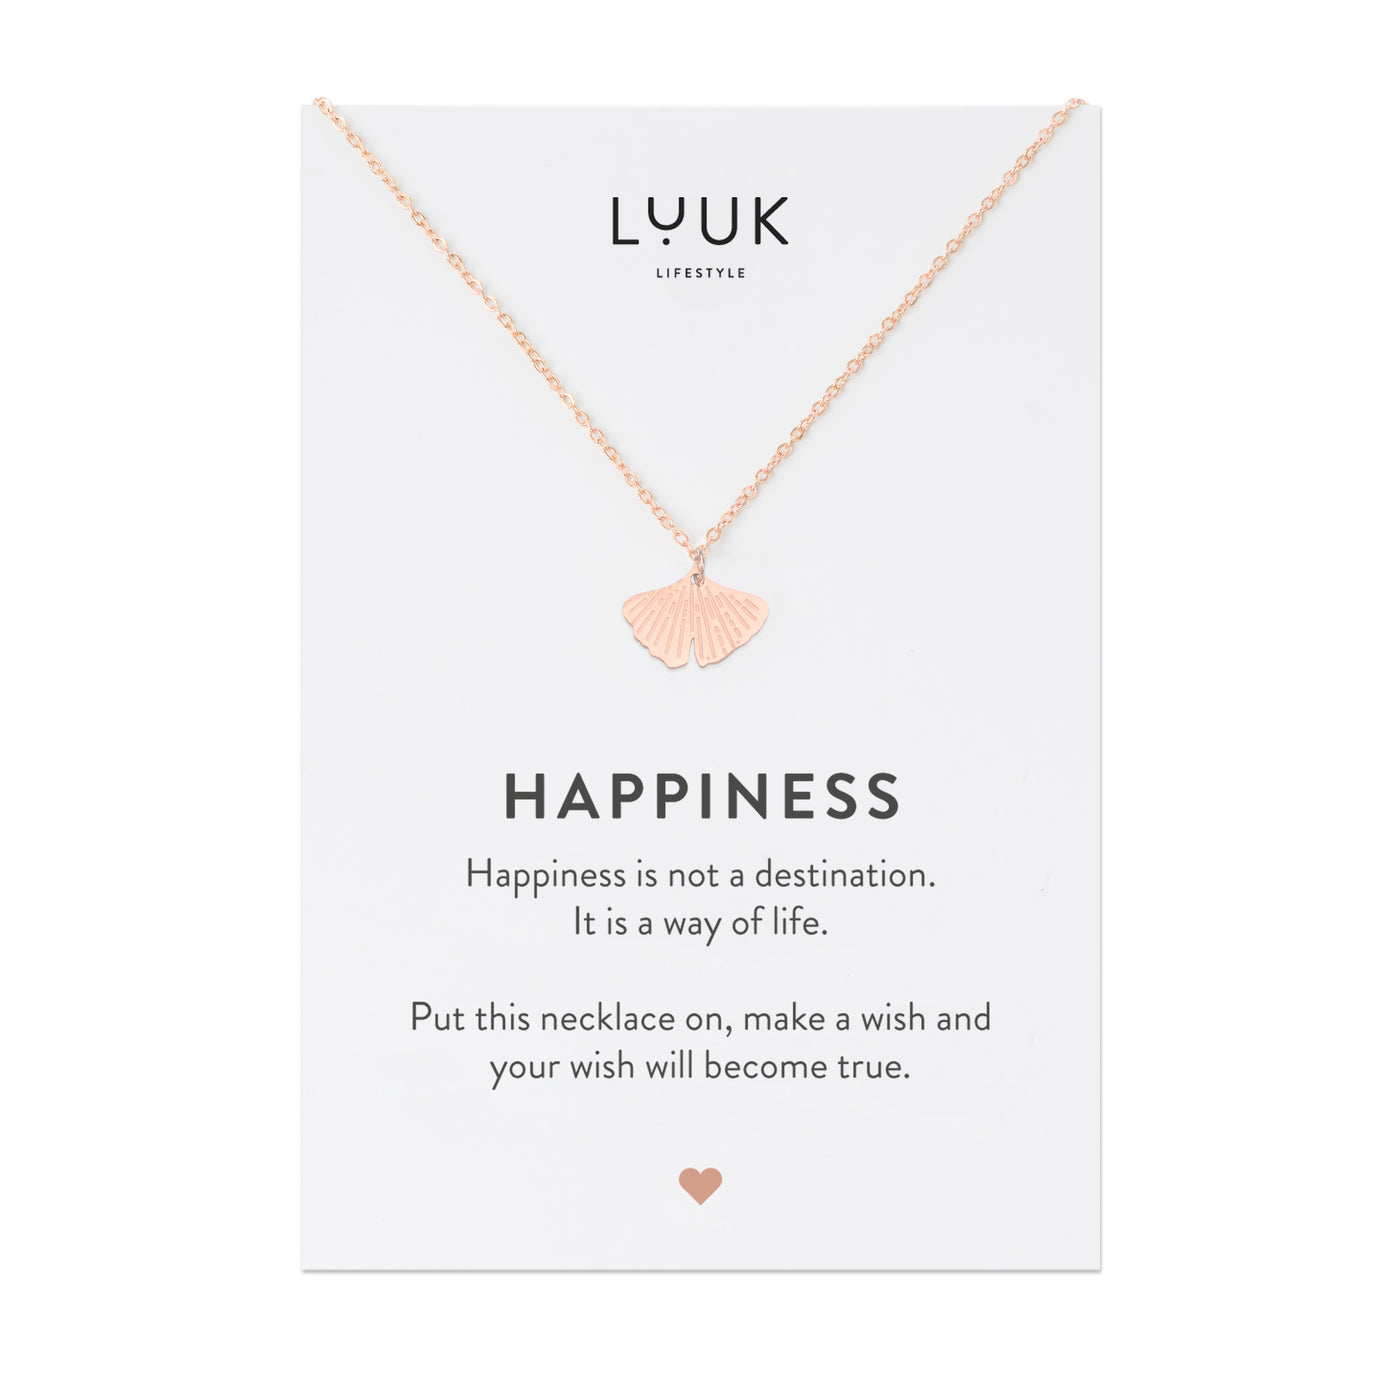 Rosegoldene Halskette mit Gingko Blatt Anhänger auf Happiness Karte von Luuk Lifestyle 